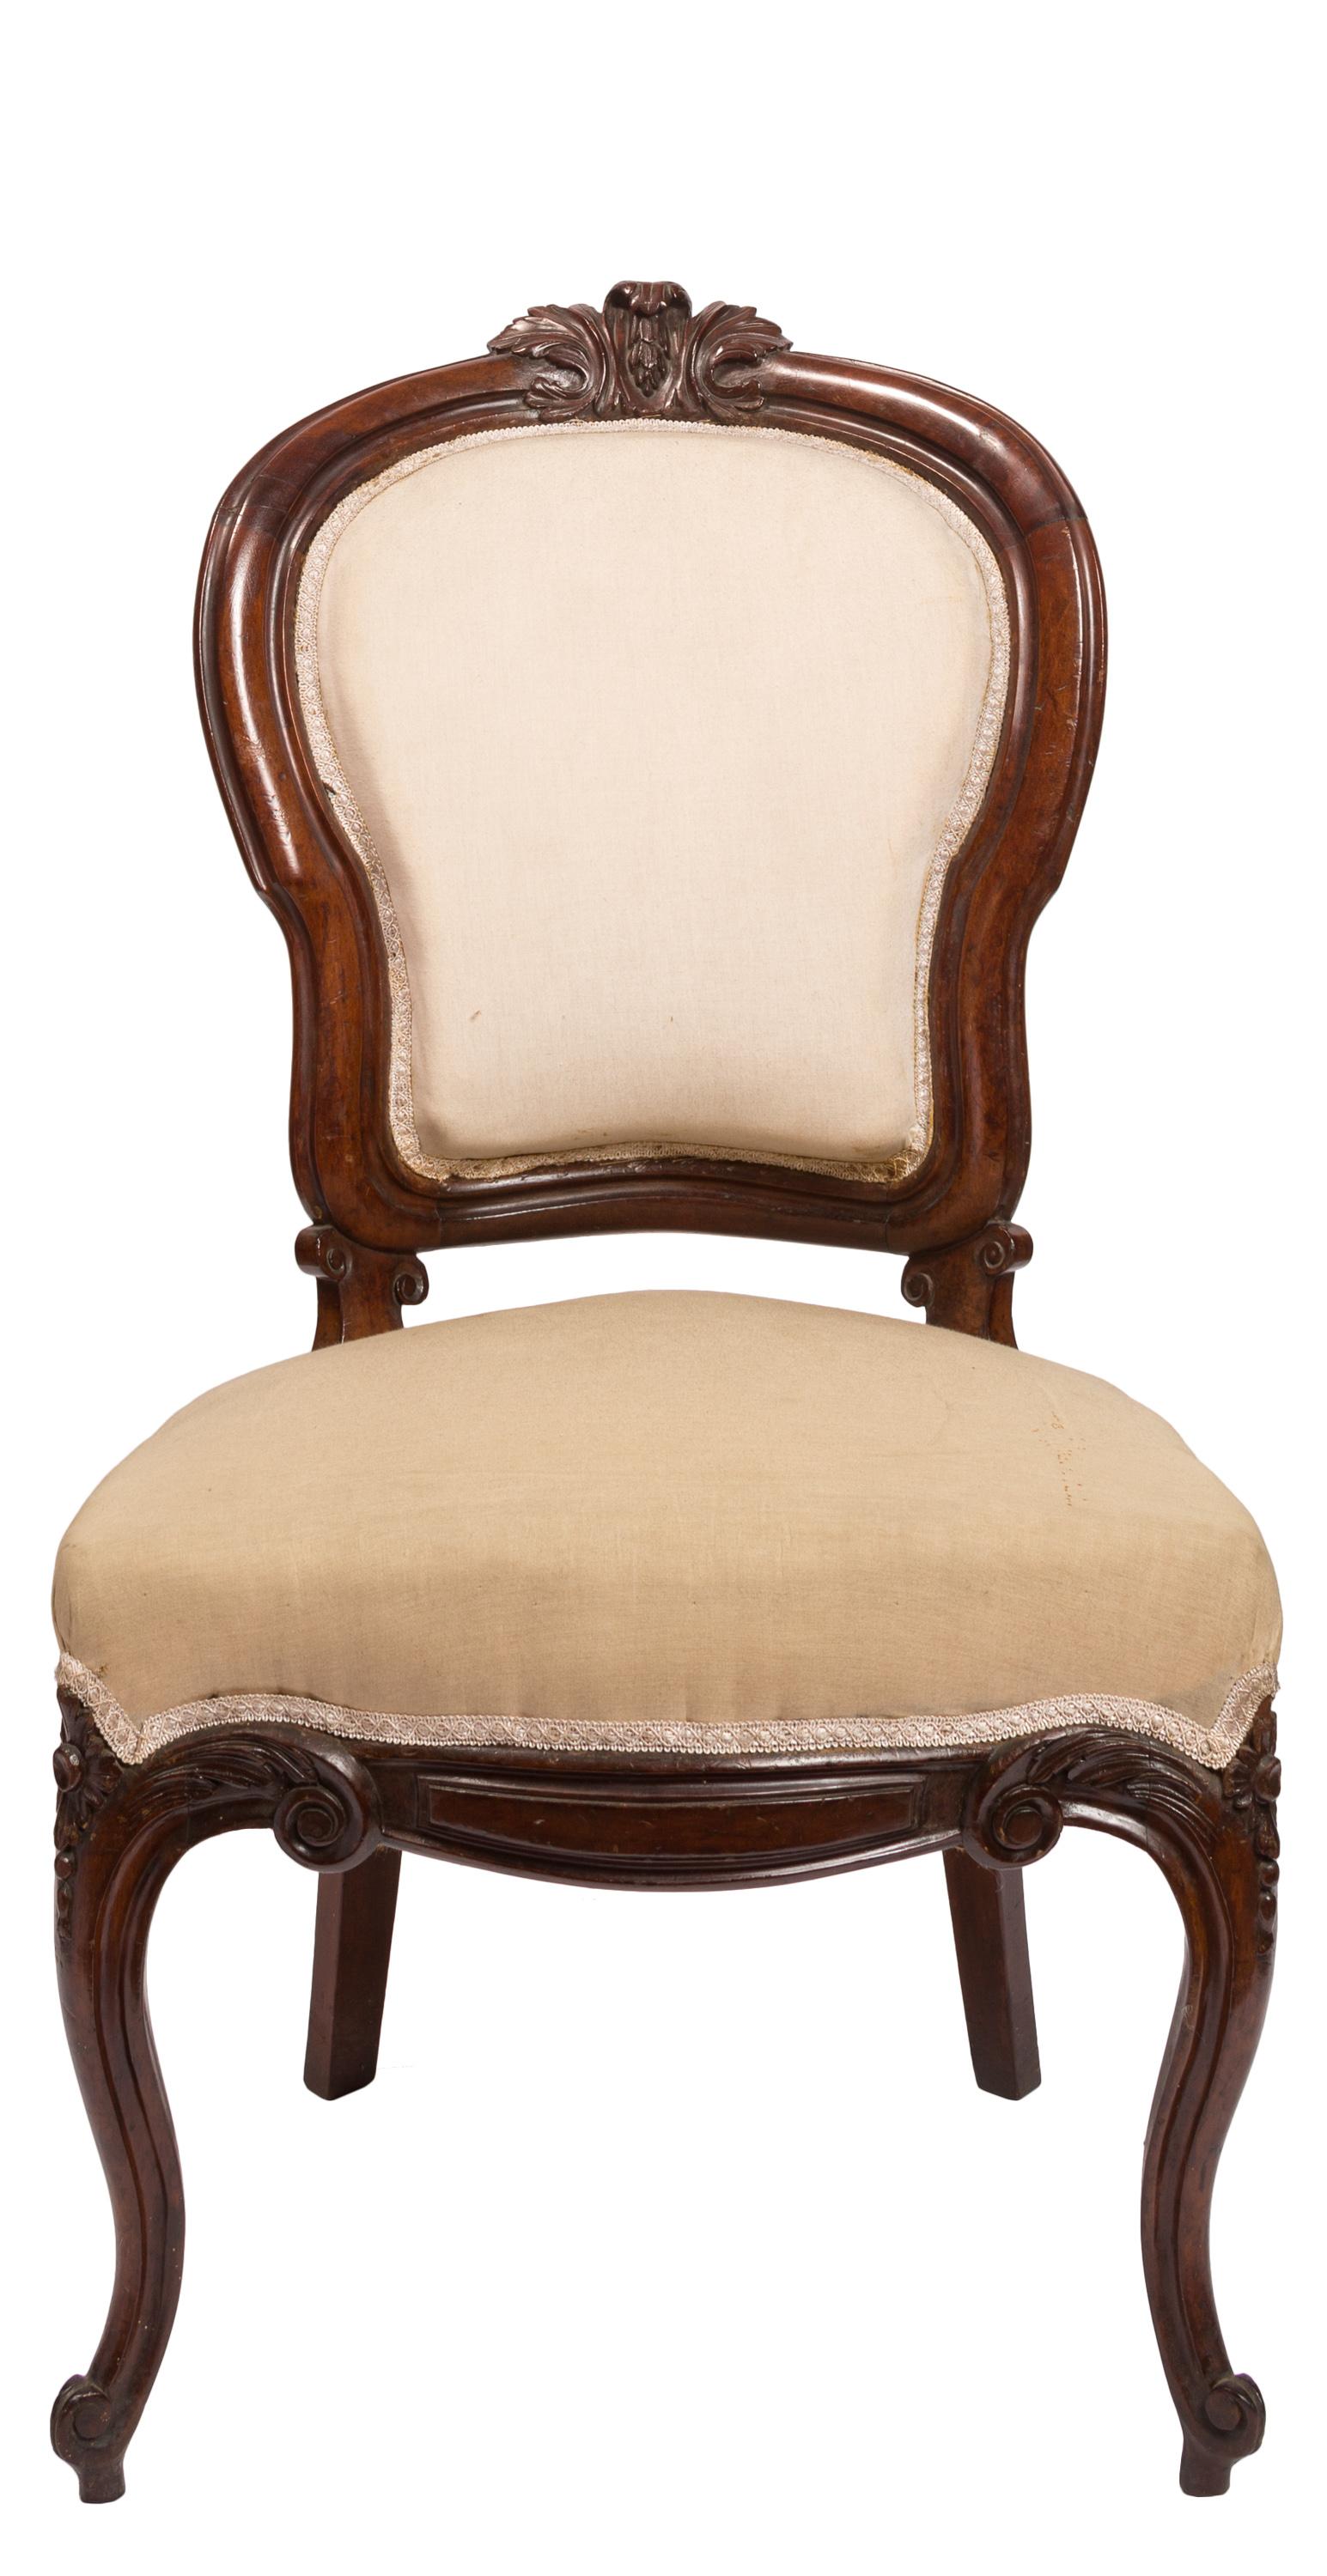 Un ensemble de six chaises latérales espagnoles de style Isabelina / période victorienne avec siège et dossier supérieur rembourrés. Recouverts d'un tissu neutre, ils peuvent être retapissés pour s'adapter à tout type d'intérieur ou de design. Posé